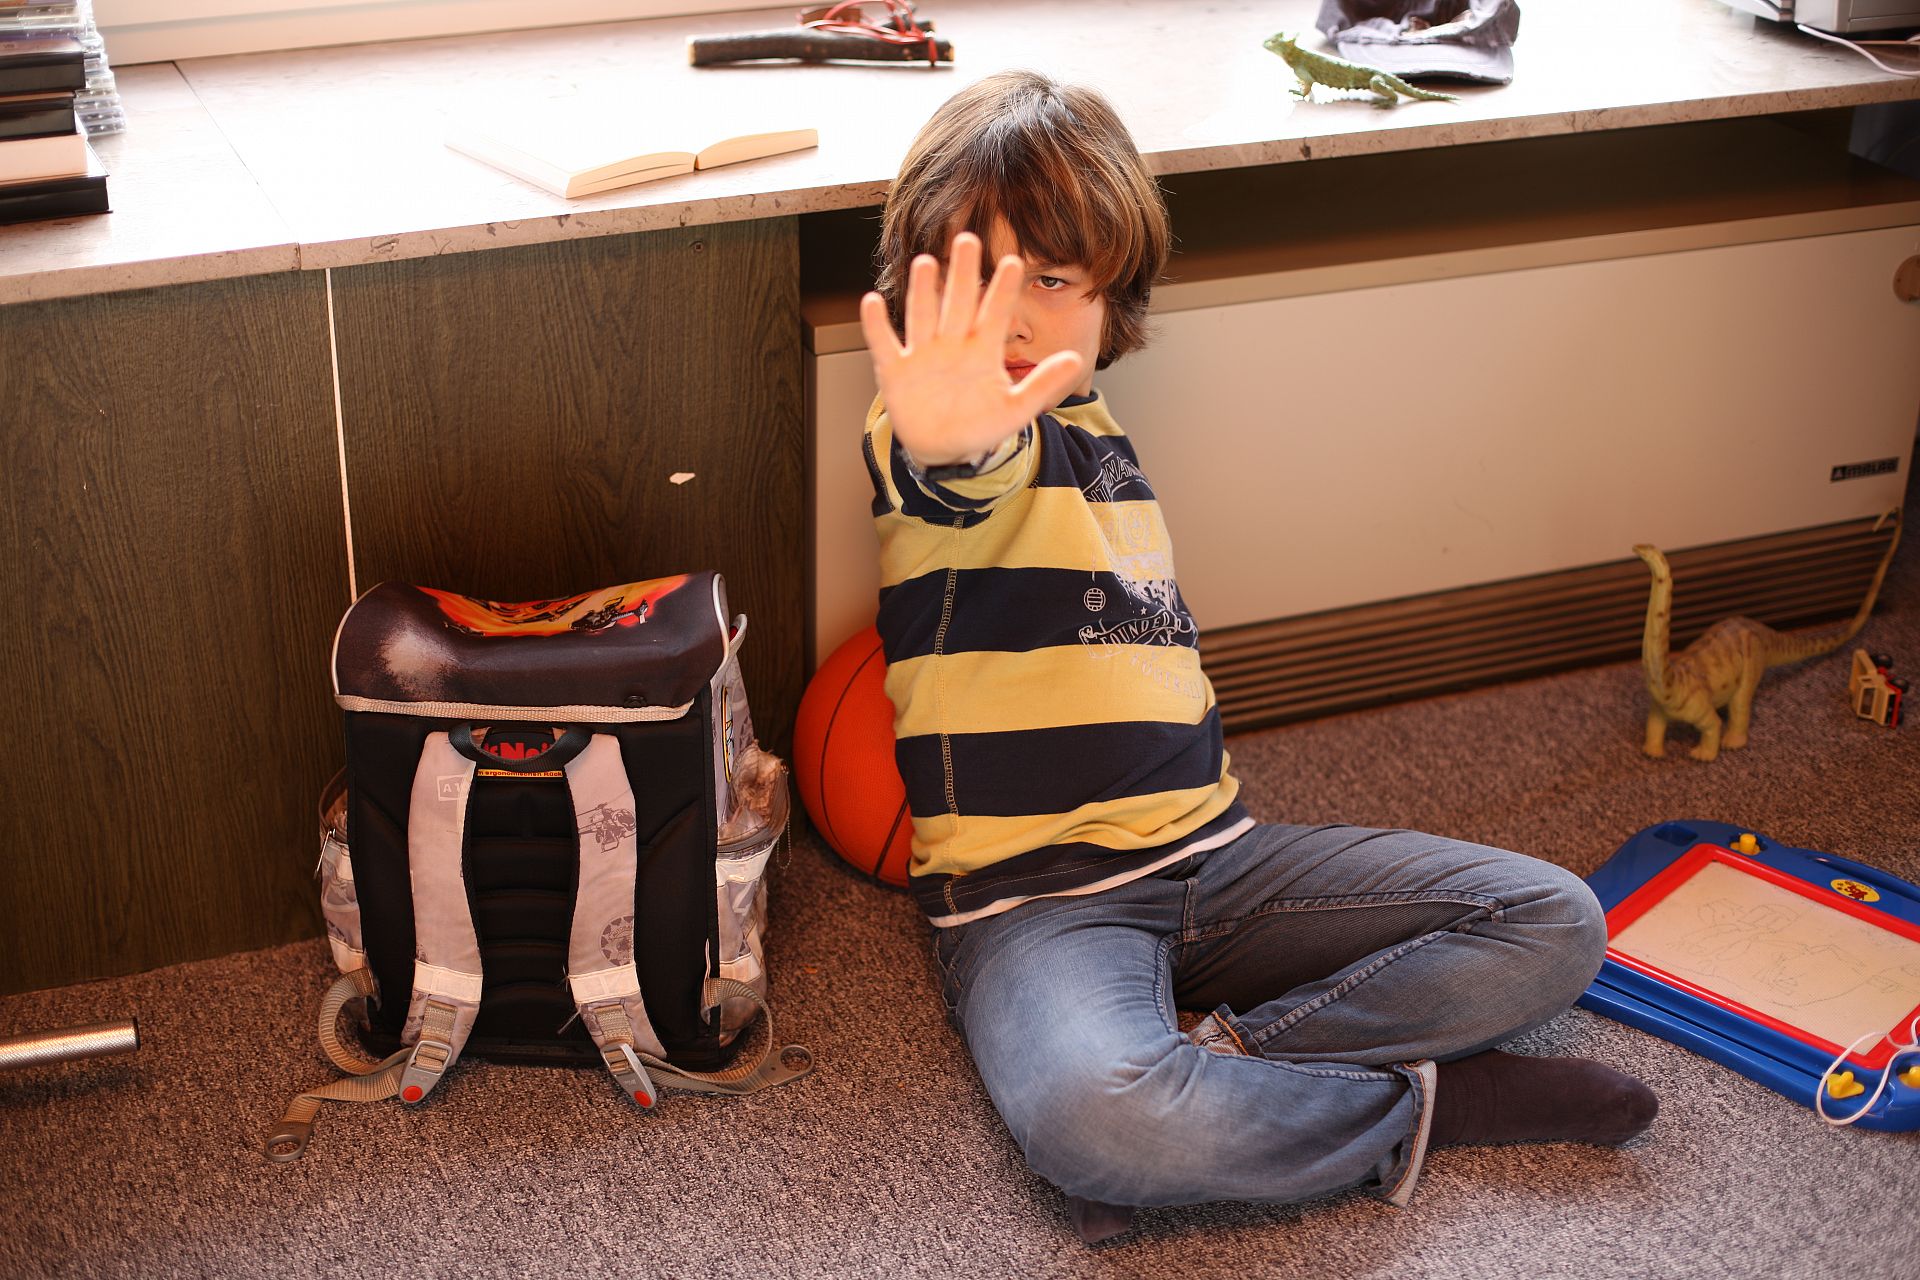 Junge sitzt auf dem Boden neben seinem Schulranzen und zeigt die Stopp-Geste.